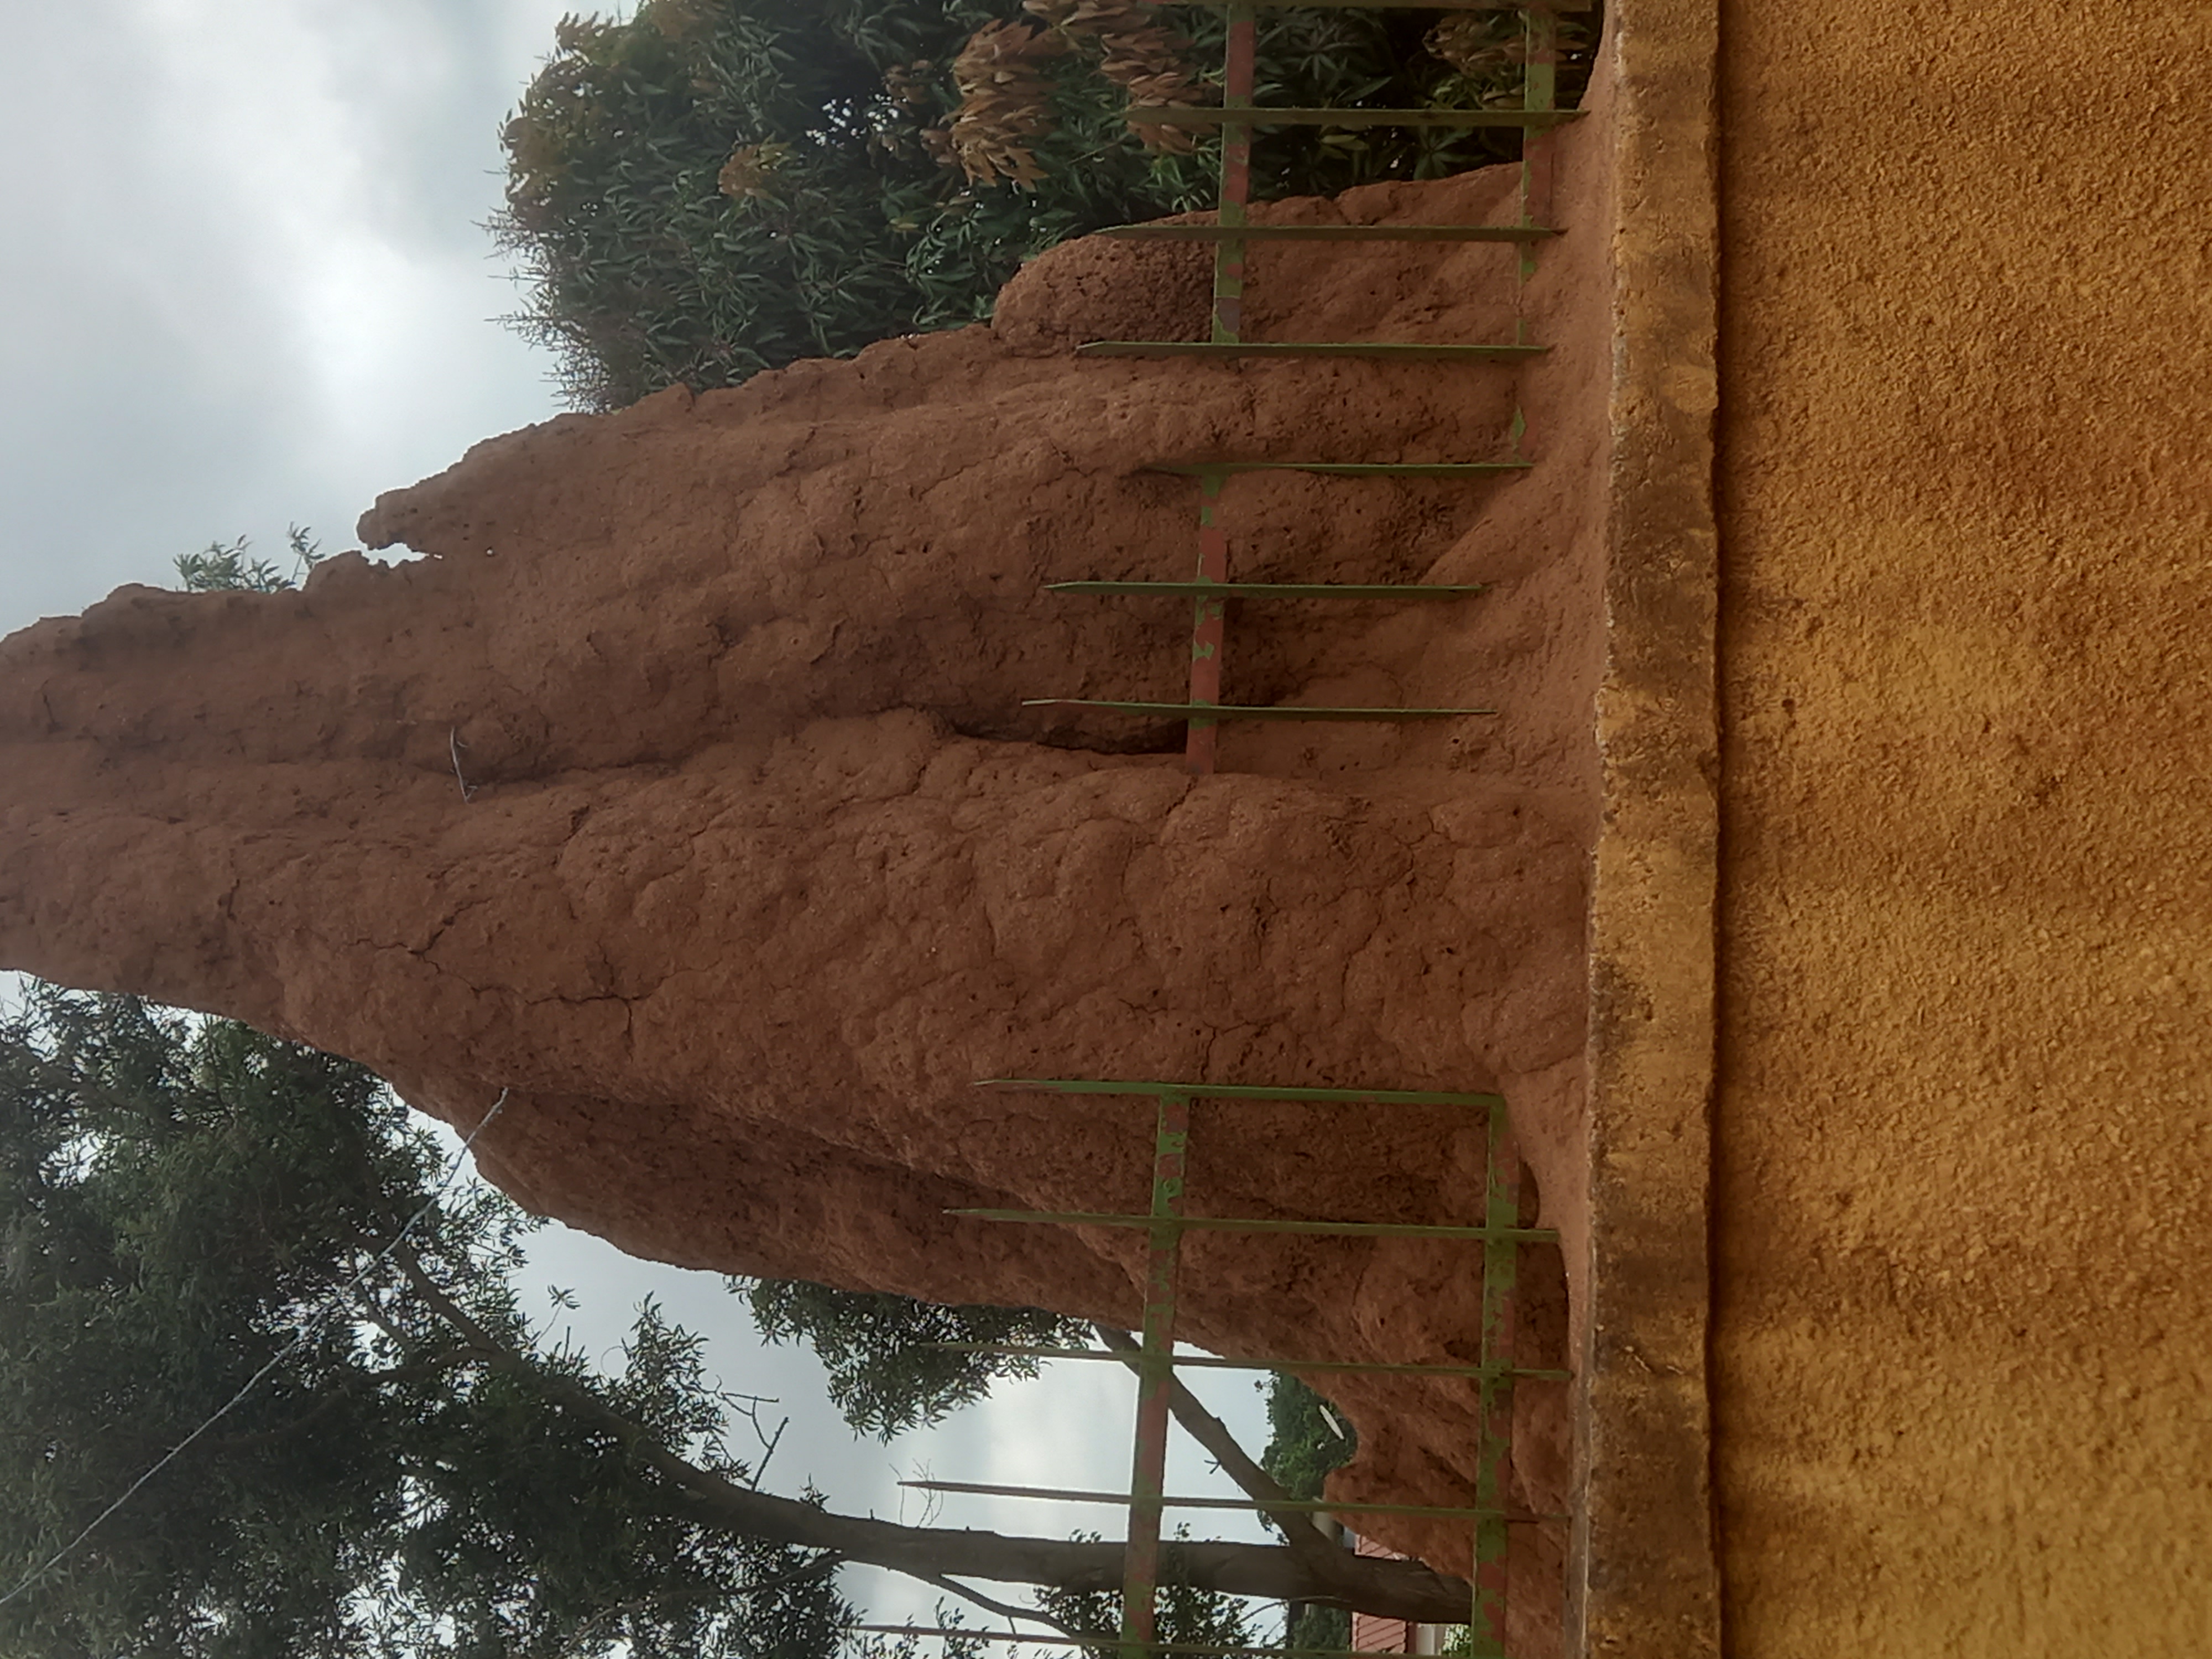 gagnoa-une-termitiere-geante-dans-la-cour-de-la-prefecture-de-region-objet-de-curiosite